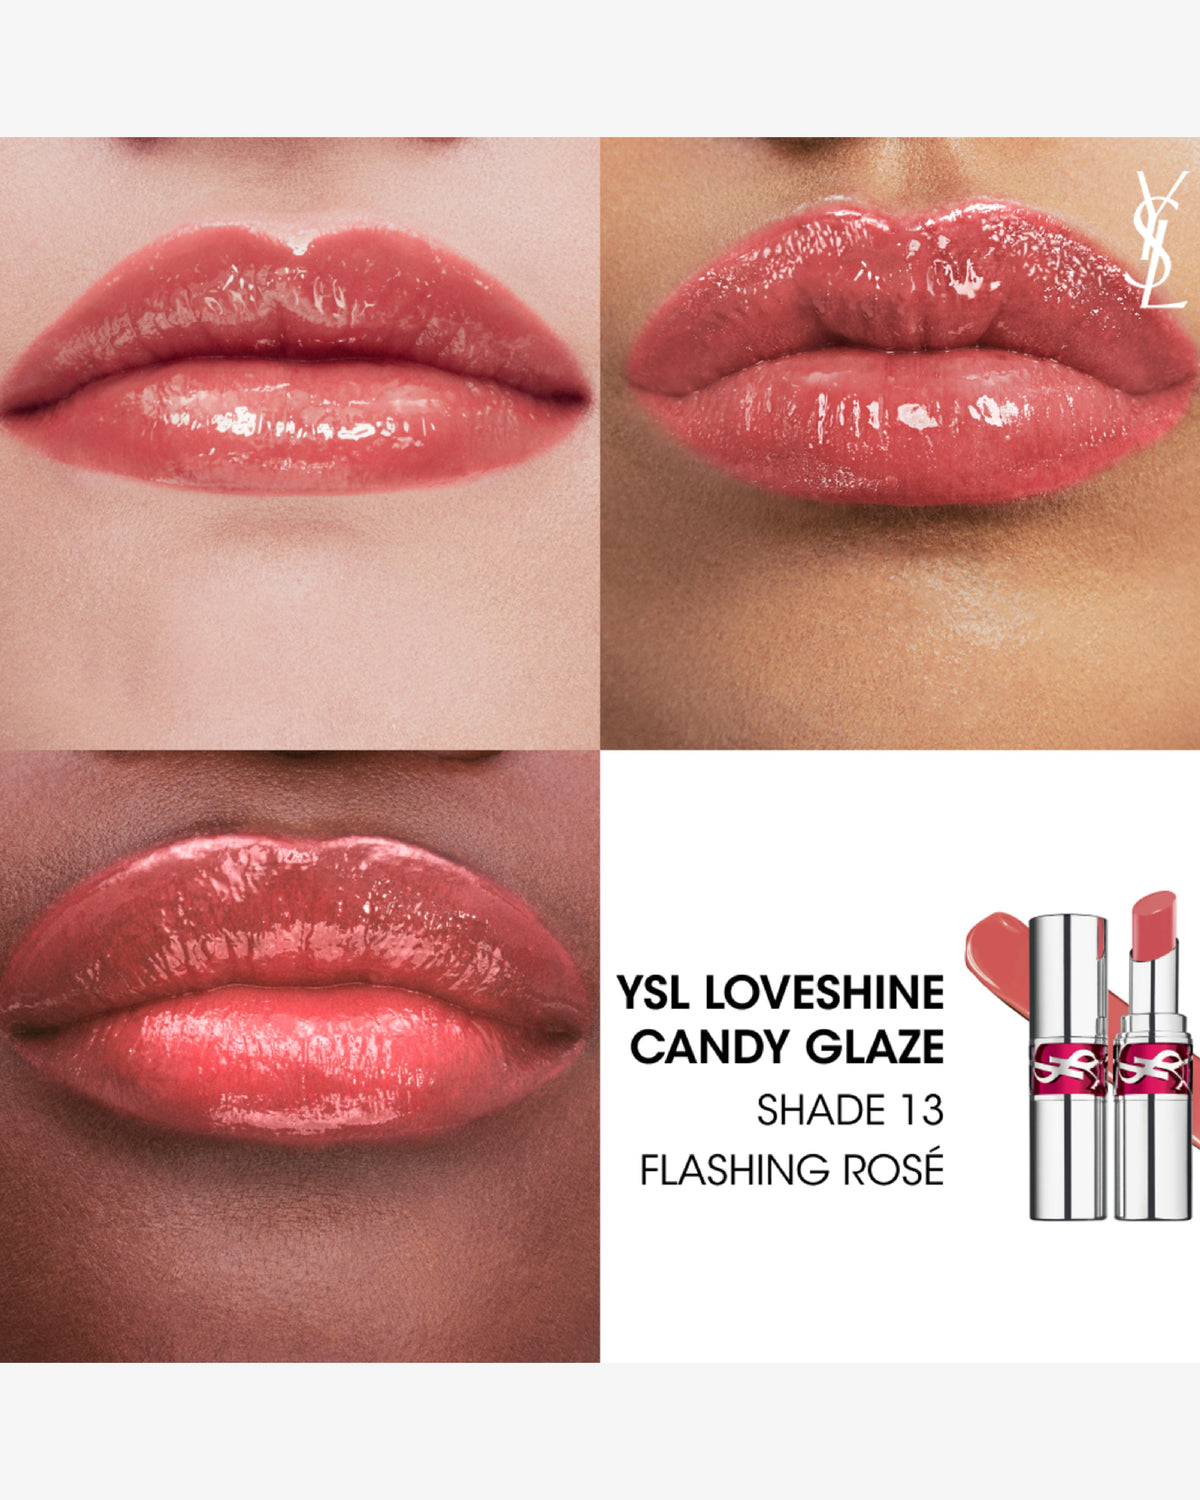 Ysl Loveshine Candy Glaze